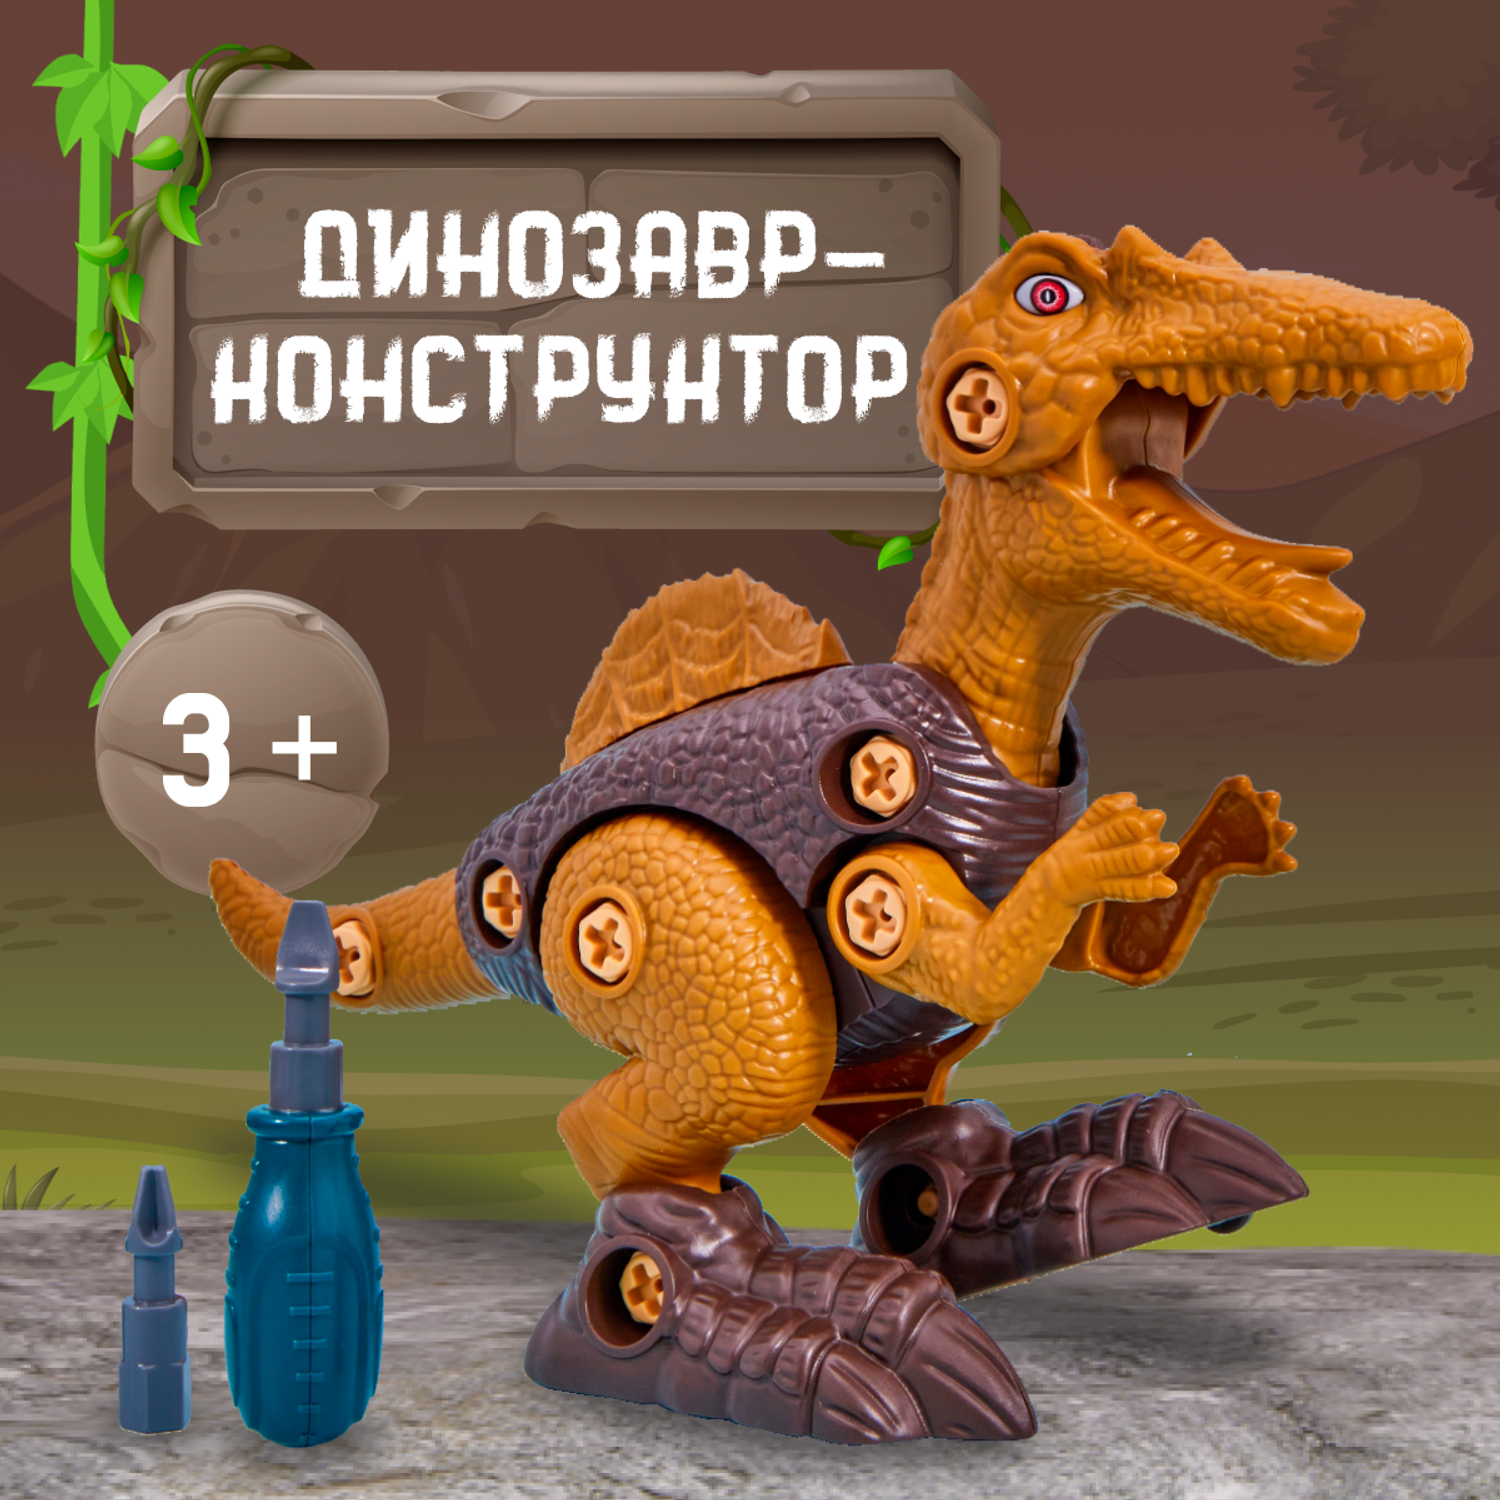 Конструктор динозавр Smart Спинозавр с отвёрткой - фото 1